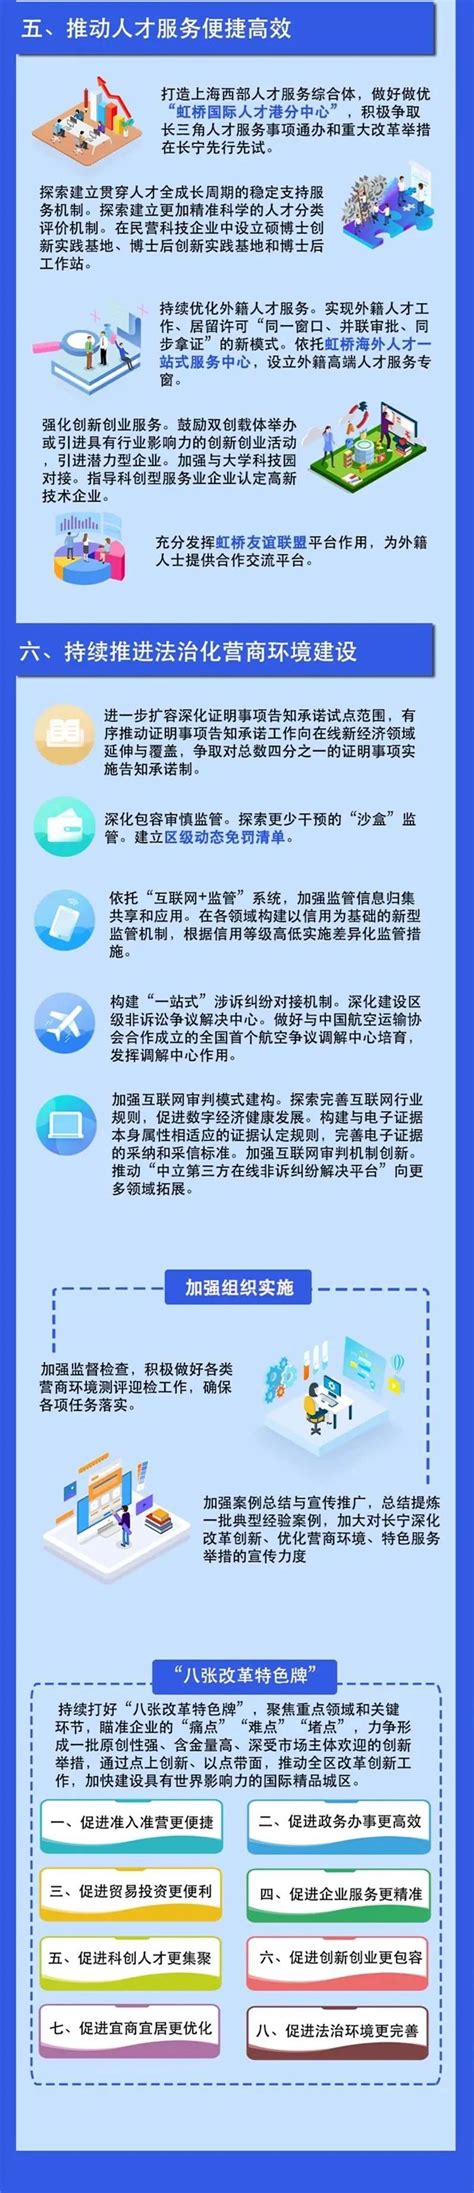 长宁区发布《电商主播直播用语规范》团体标准